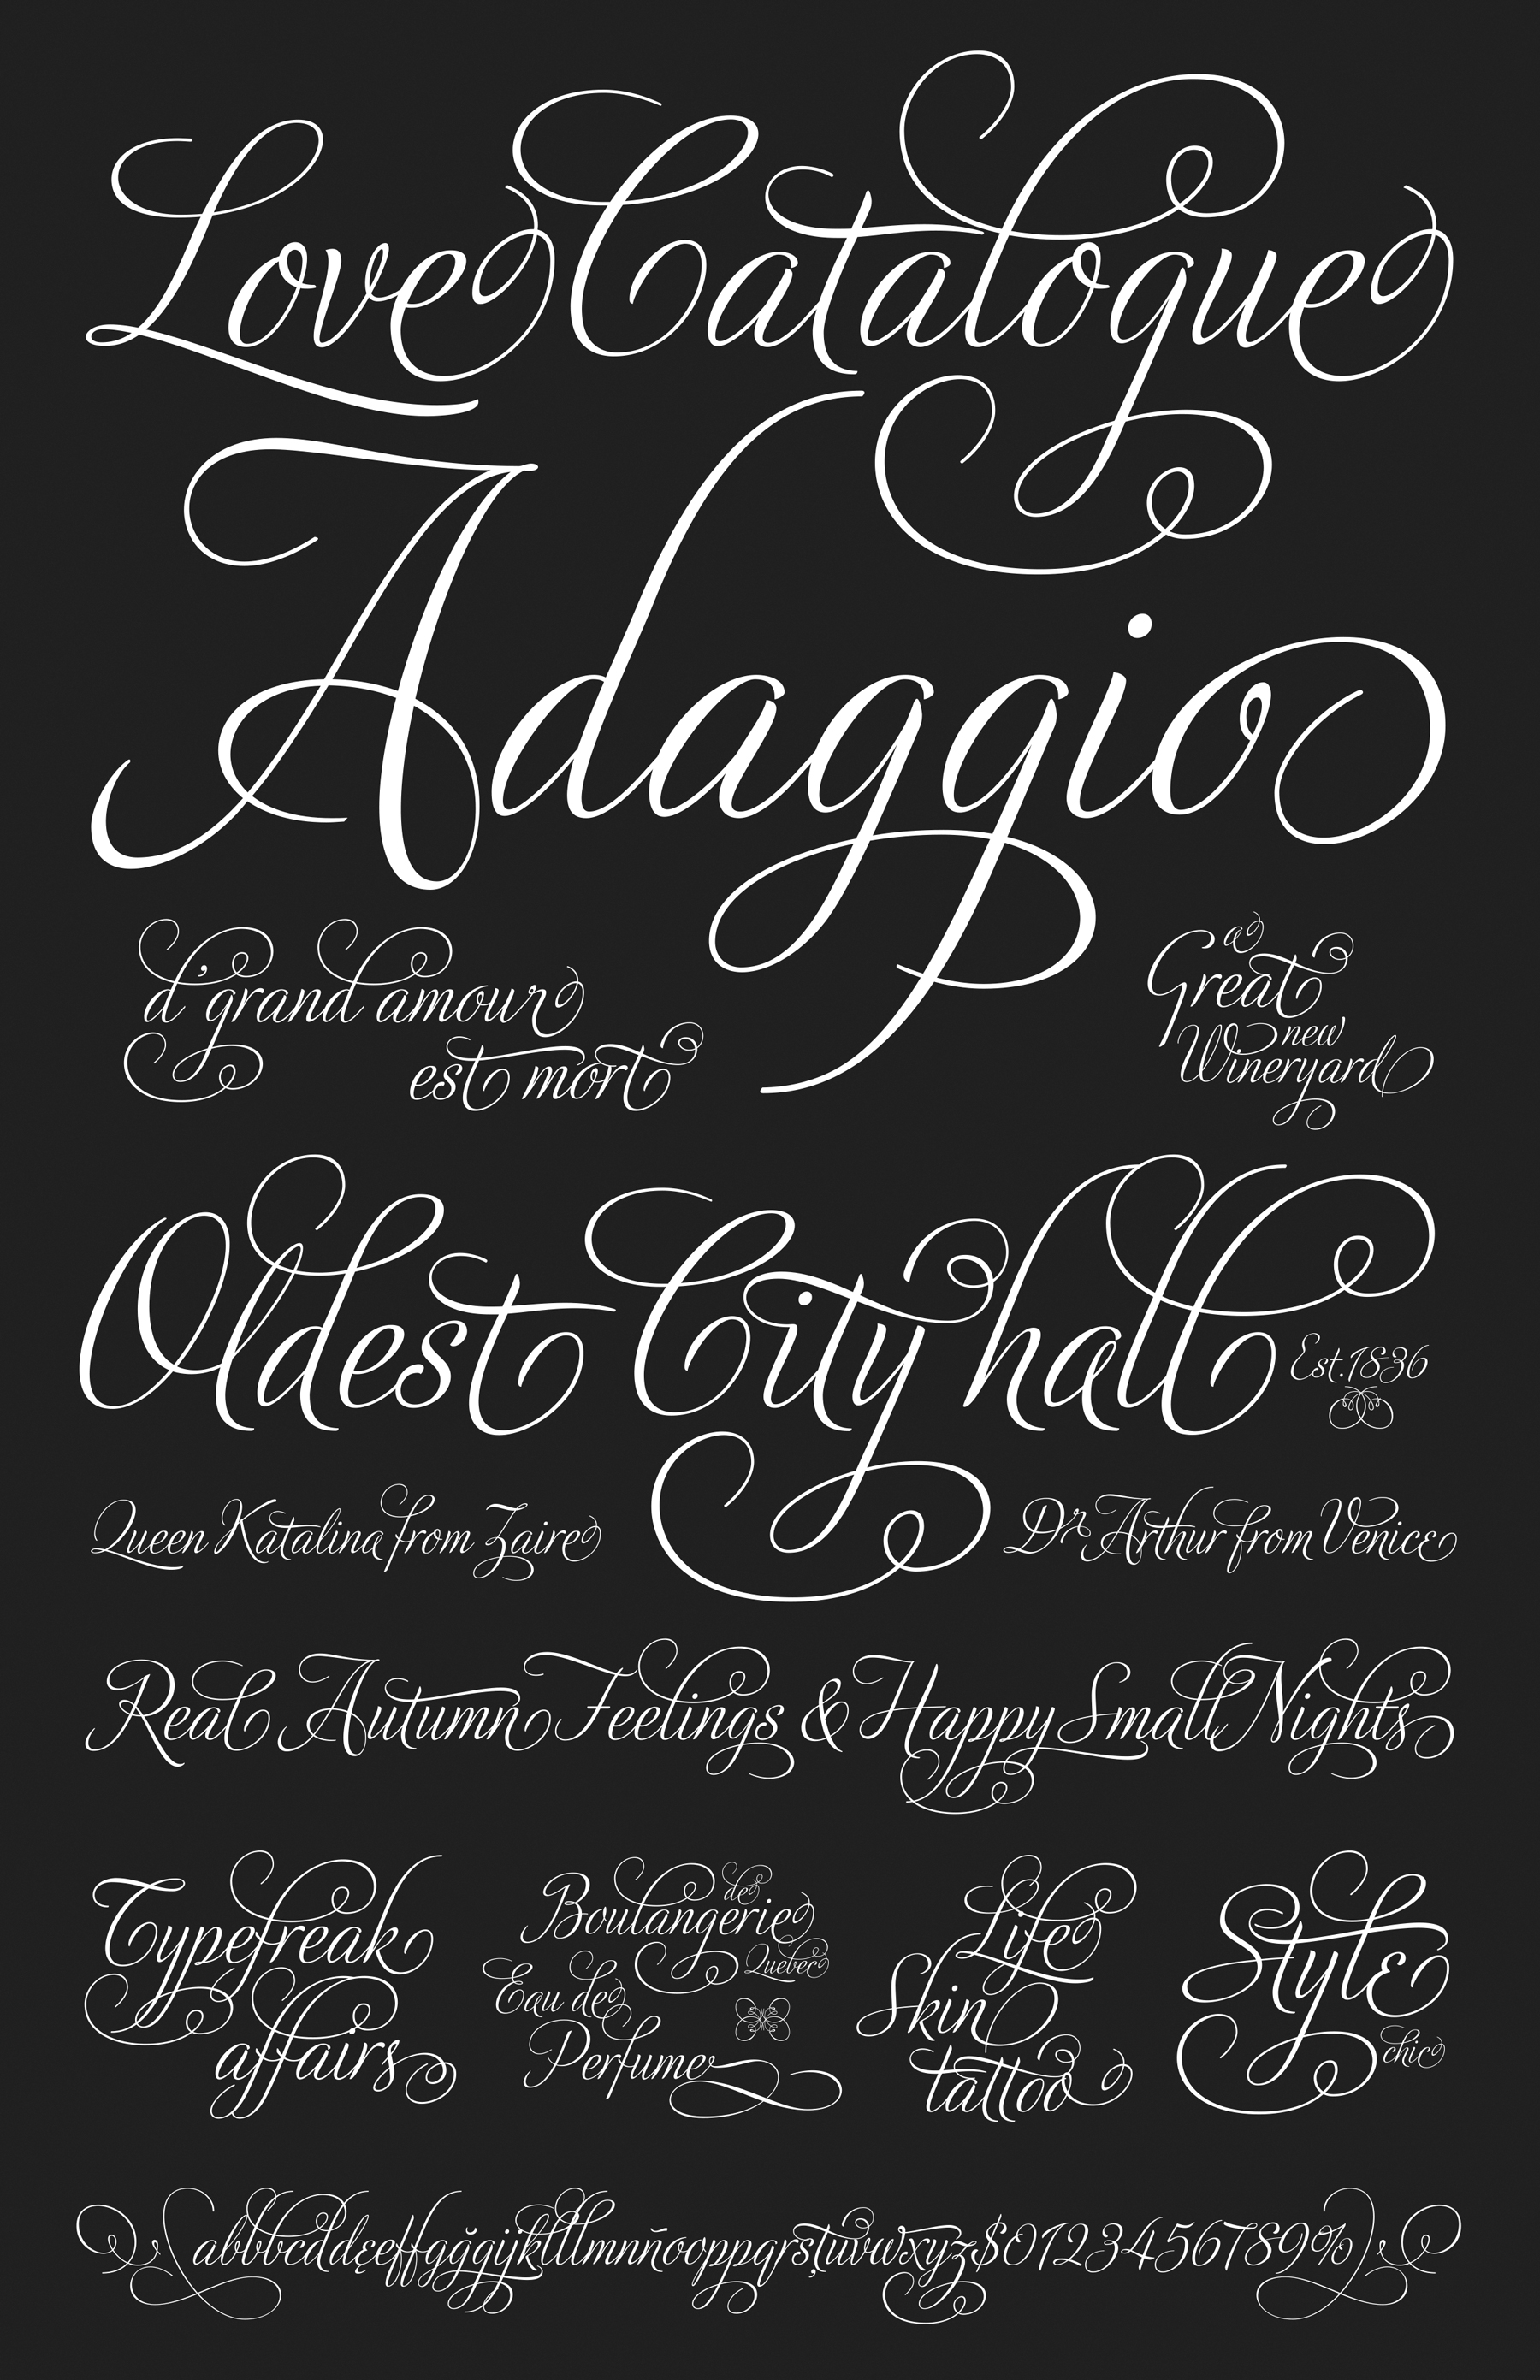 adios script font free